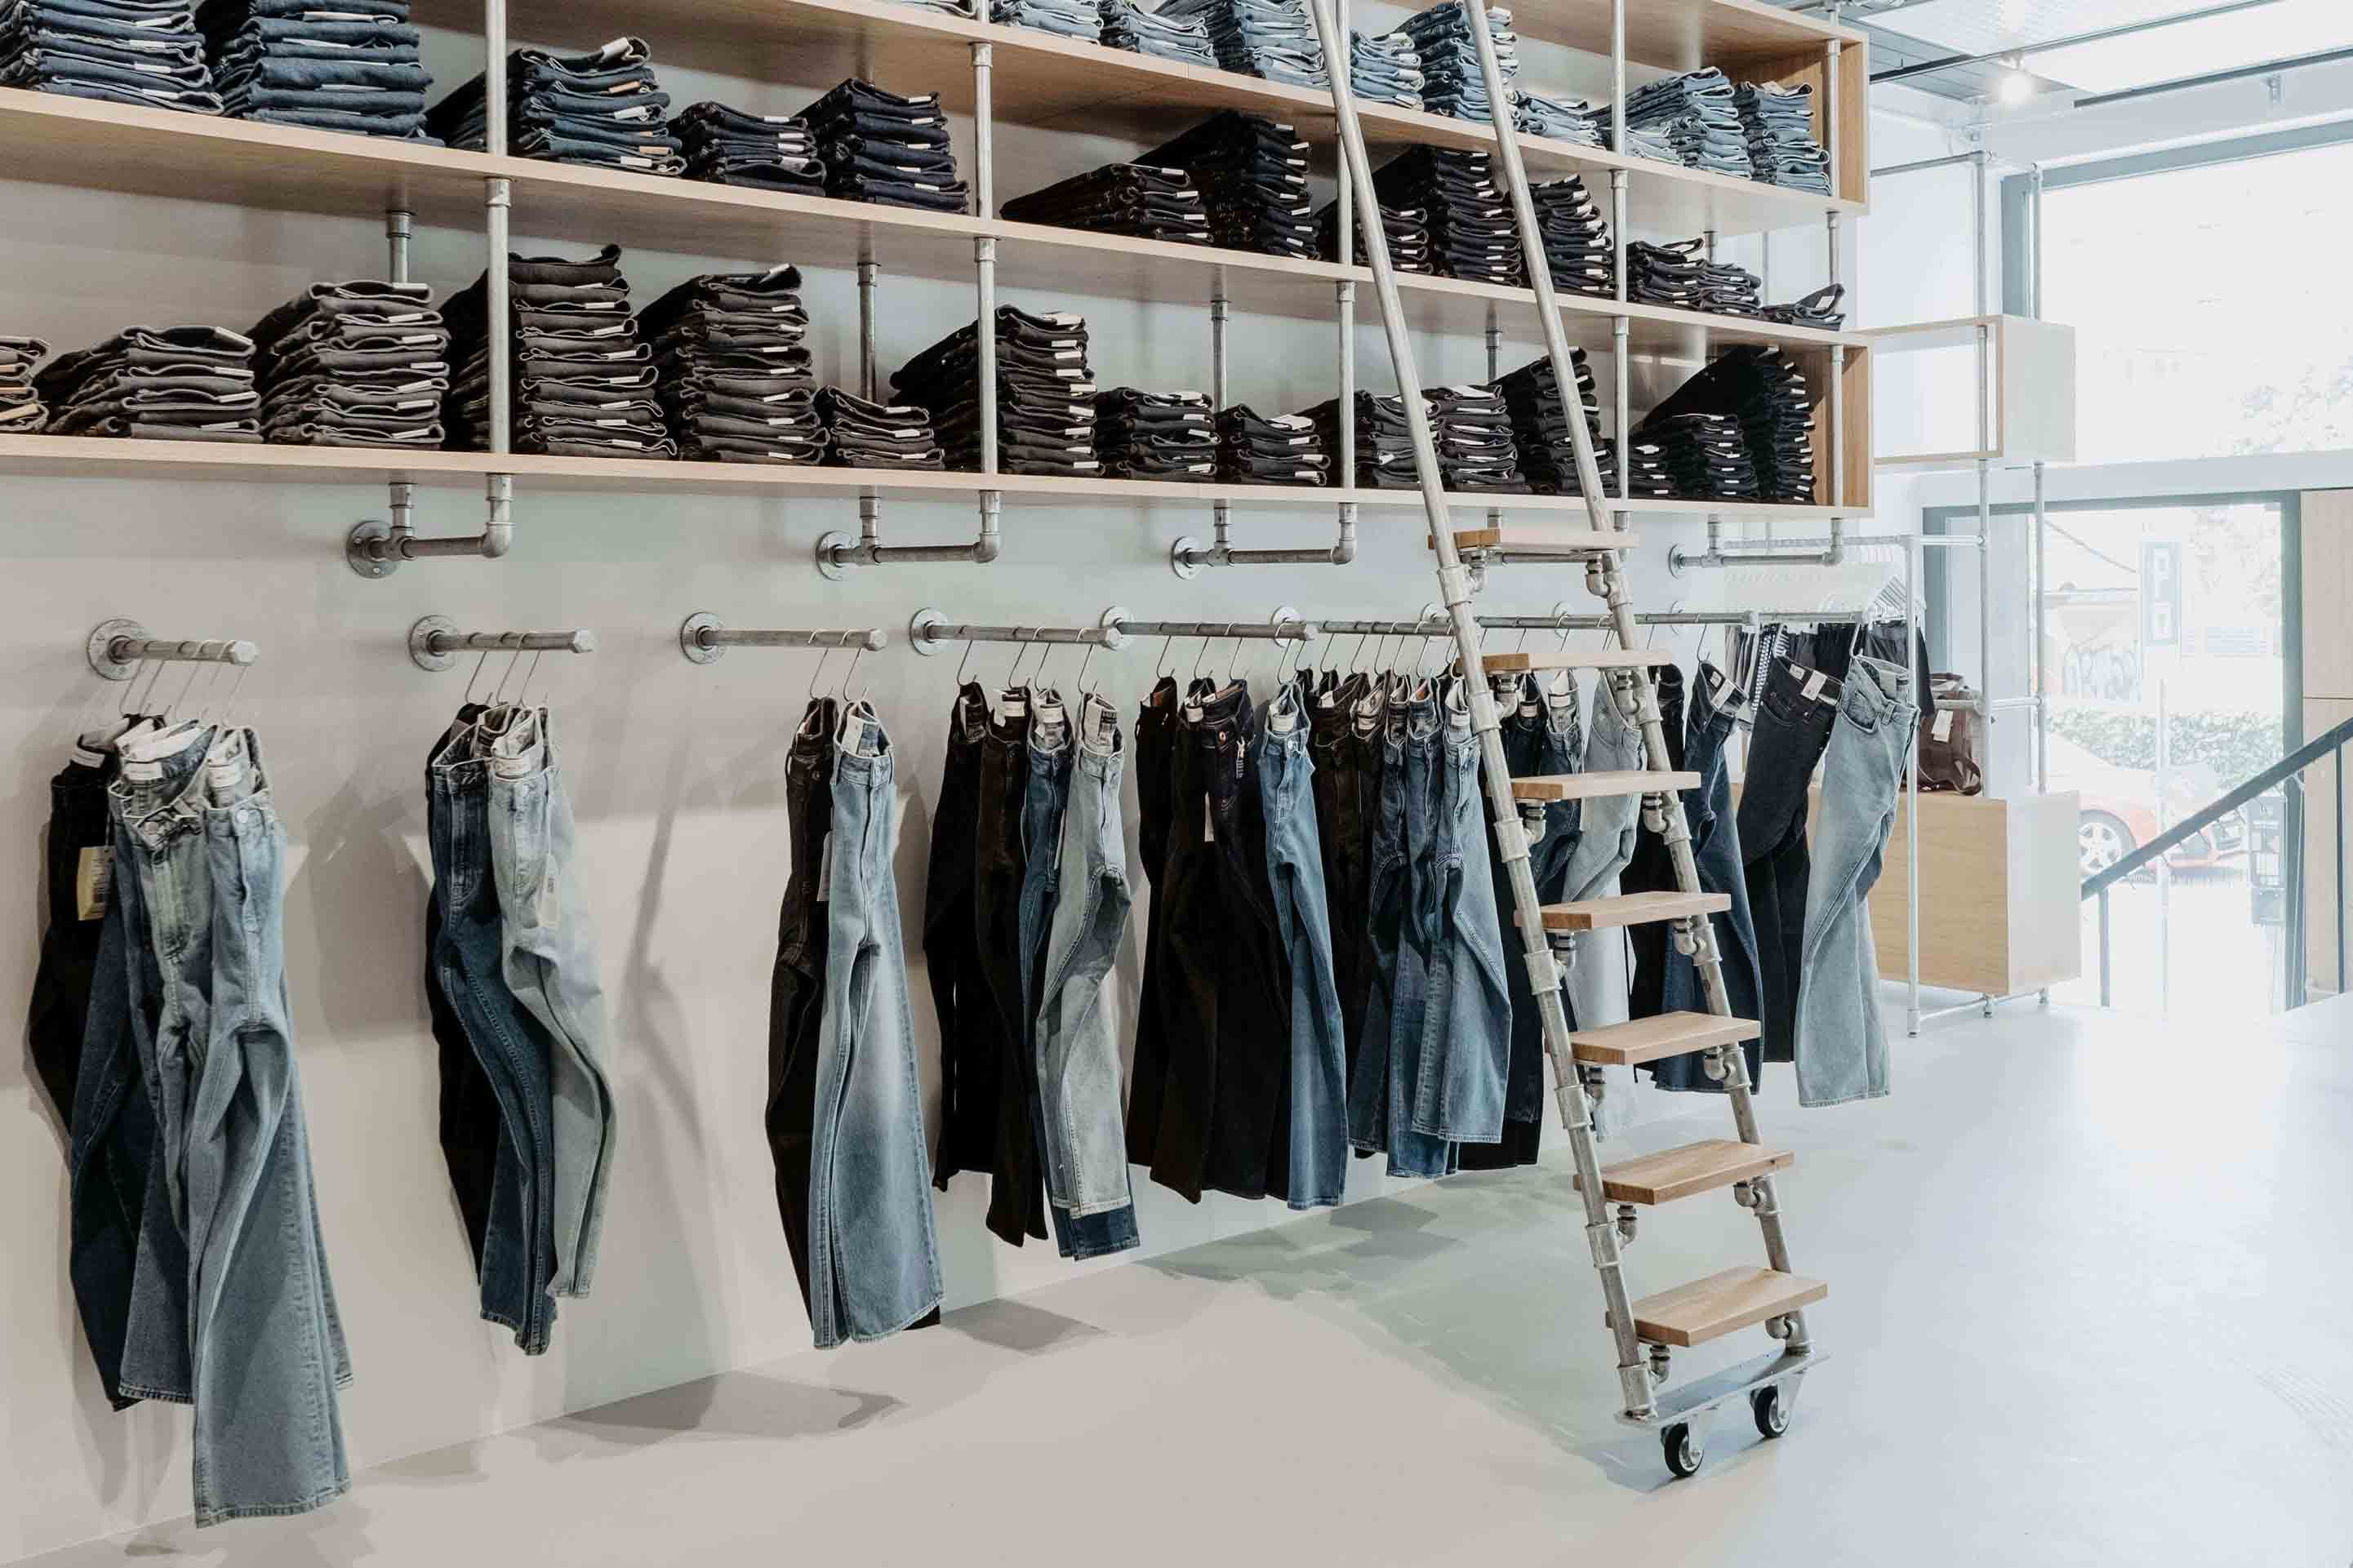 Jeansregal zieht sich über eine gesamte Wand und präsentiert hängend und gestapelt verschiedene Jeansmodelle unterschiedlichster Waschung und Farbe